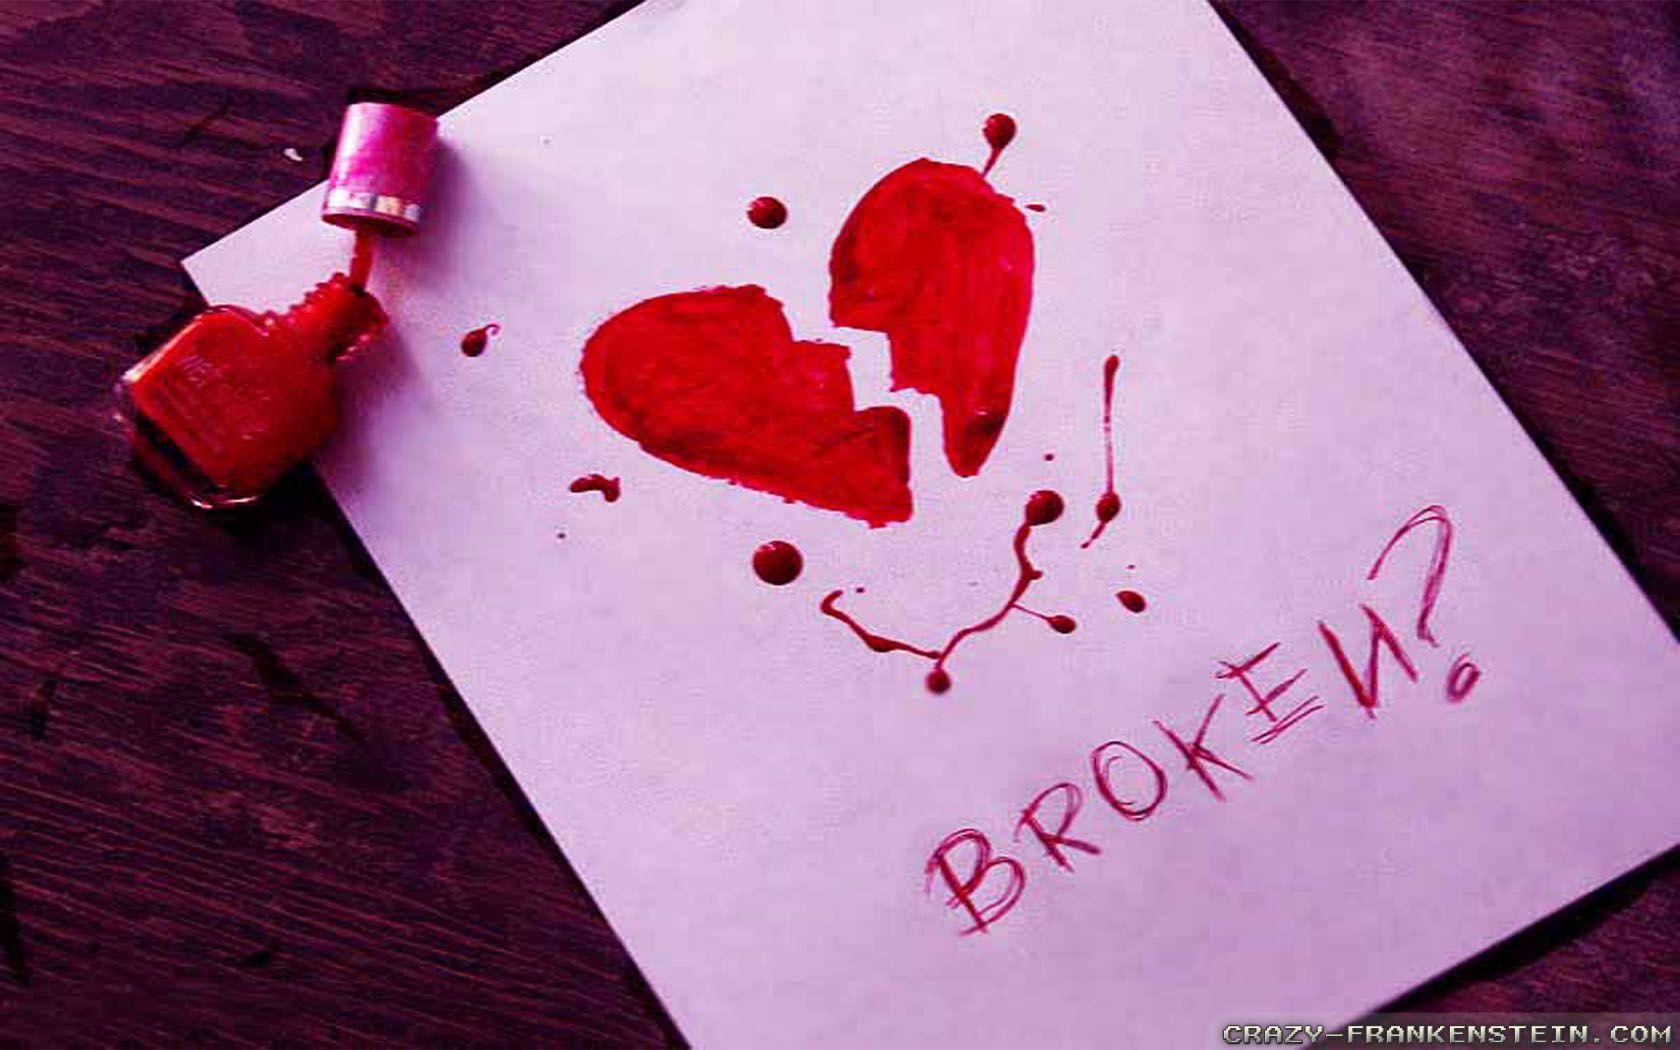 Wallpaper On Broken Heart